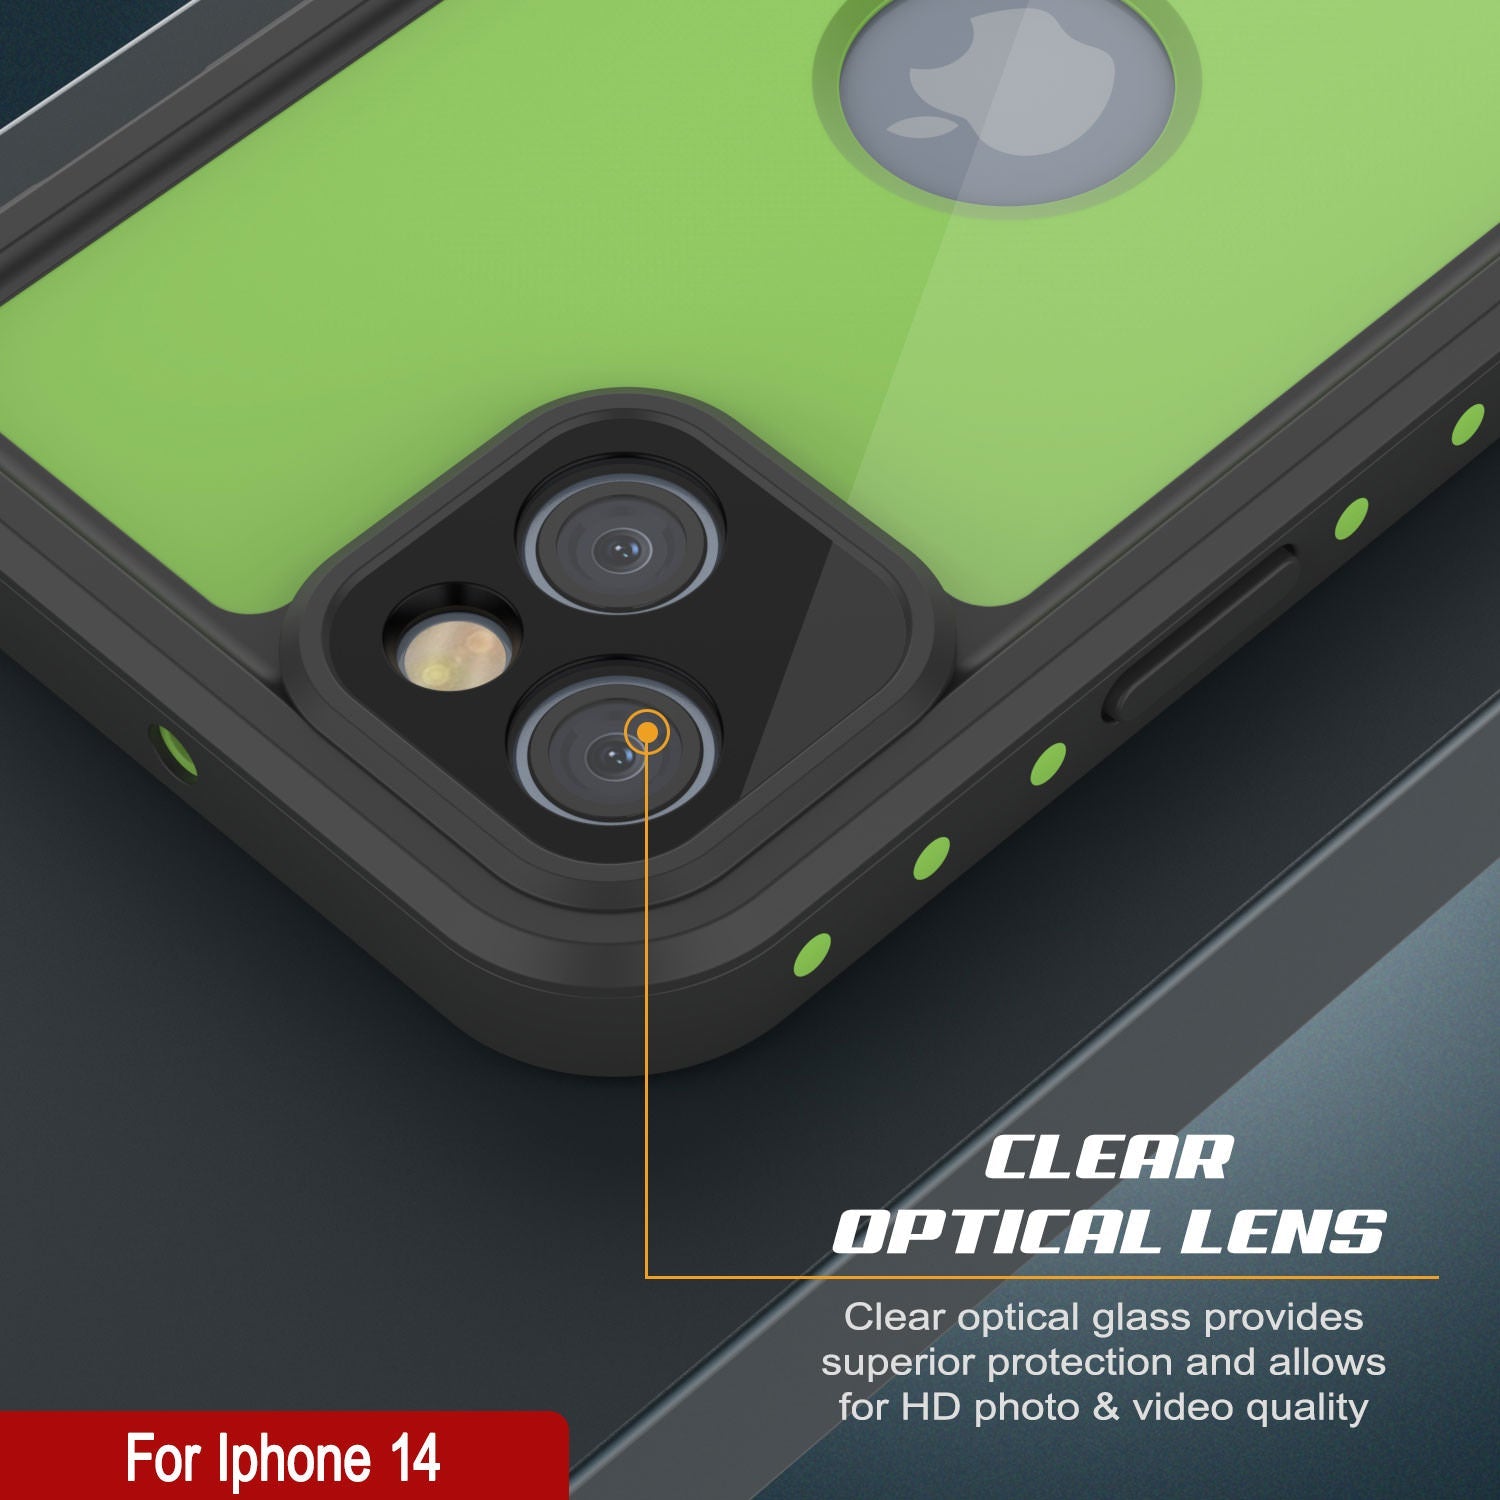 iPhone 14 Waterproof IP68 Case, Punkcase [Light green] [StudStar Series] [Slim Fit] [Dirtproof]